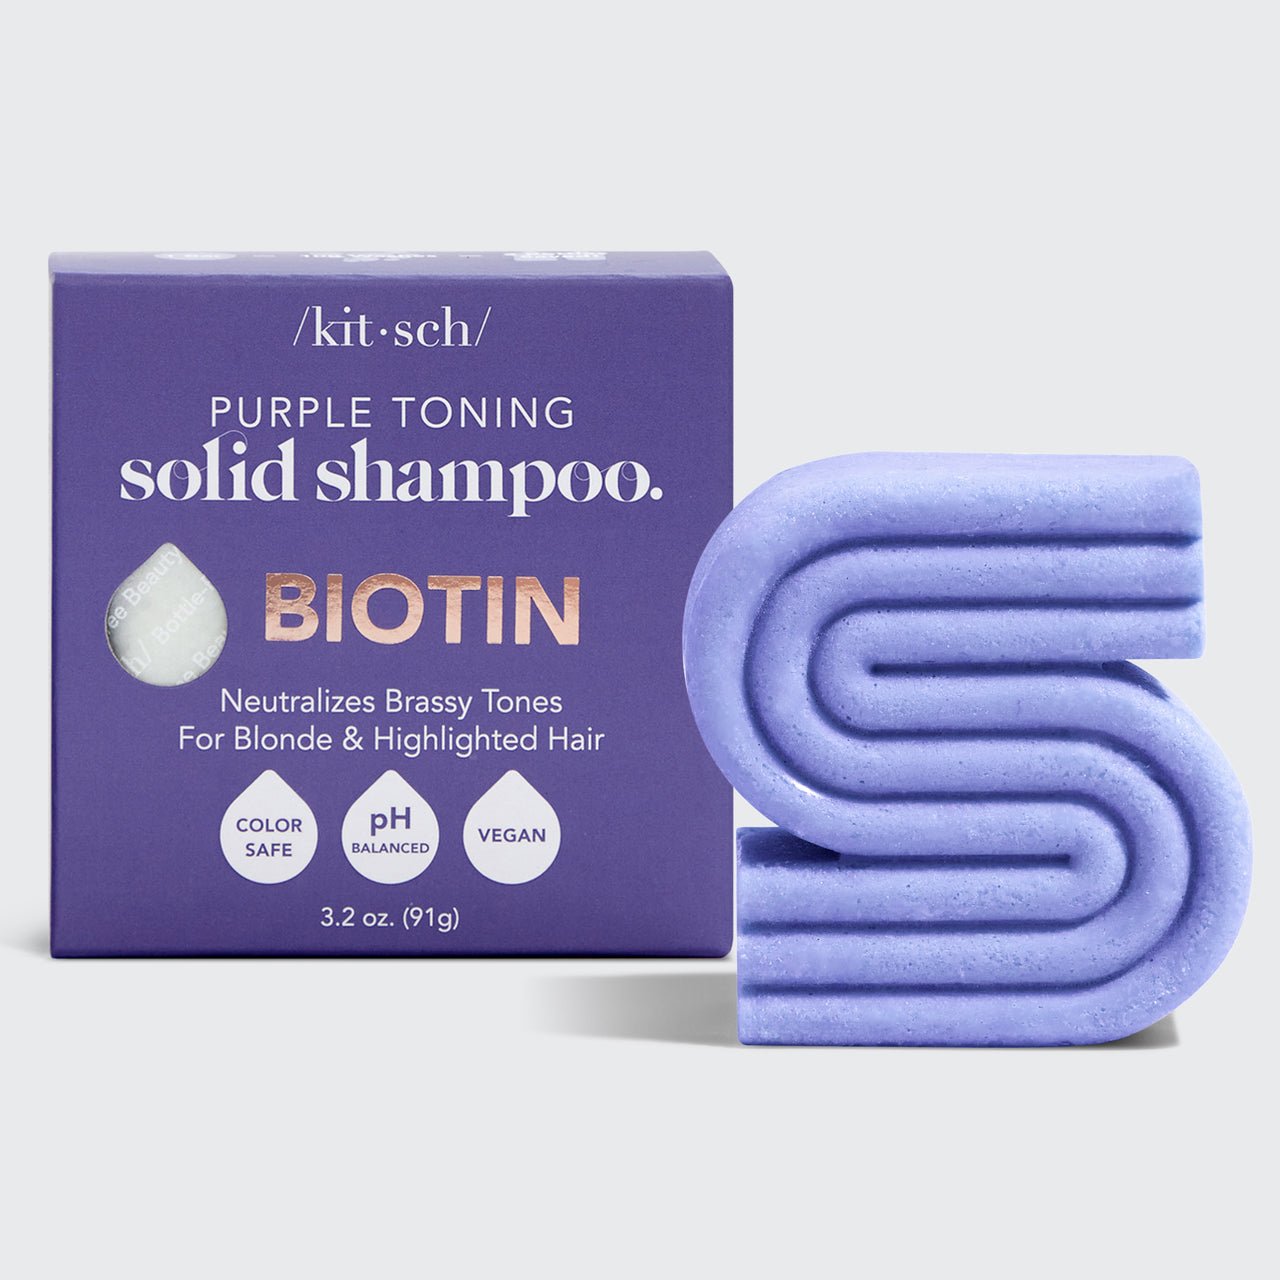 Barre de shampoing et d'après-shampoing violette avec caddy de biotine